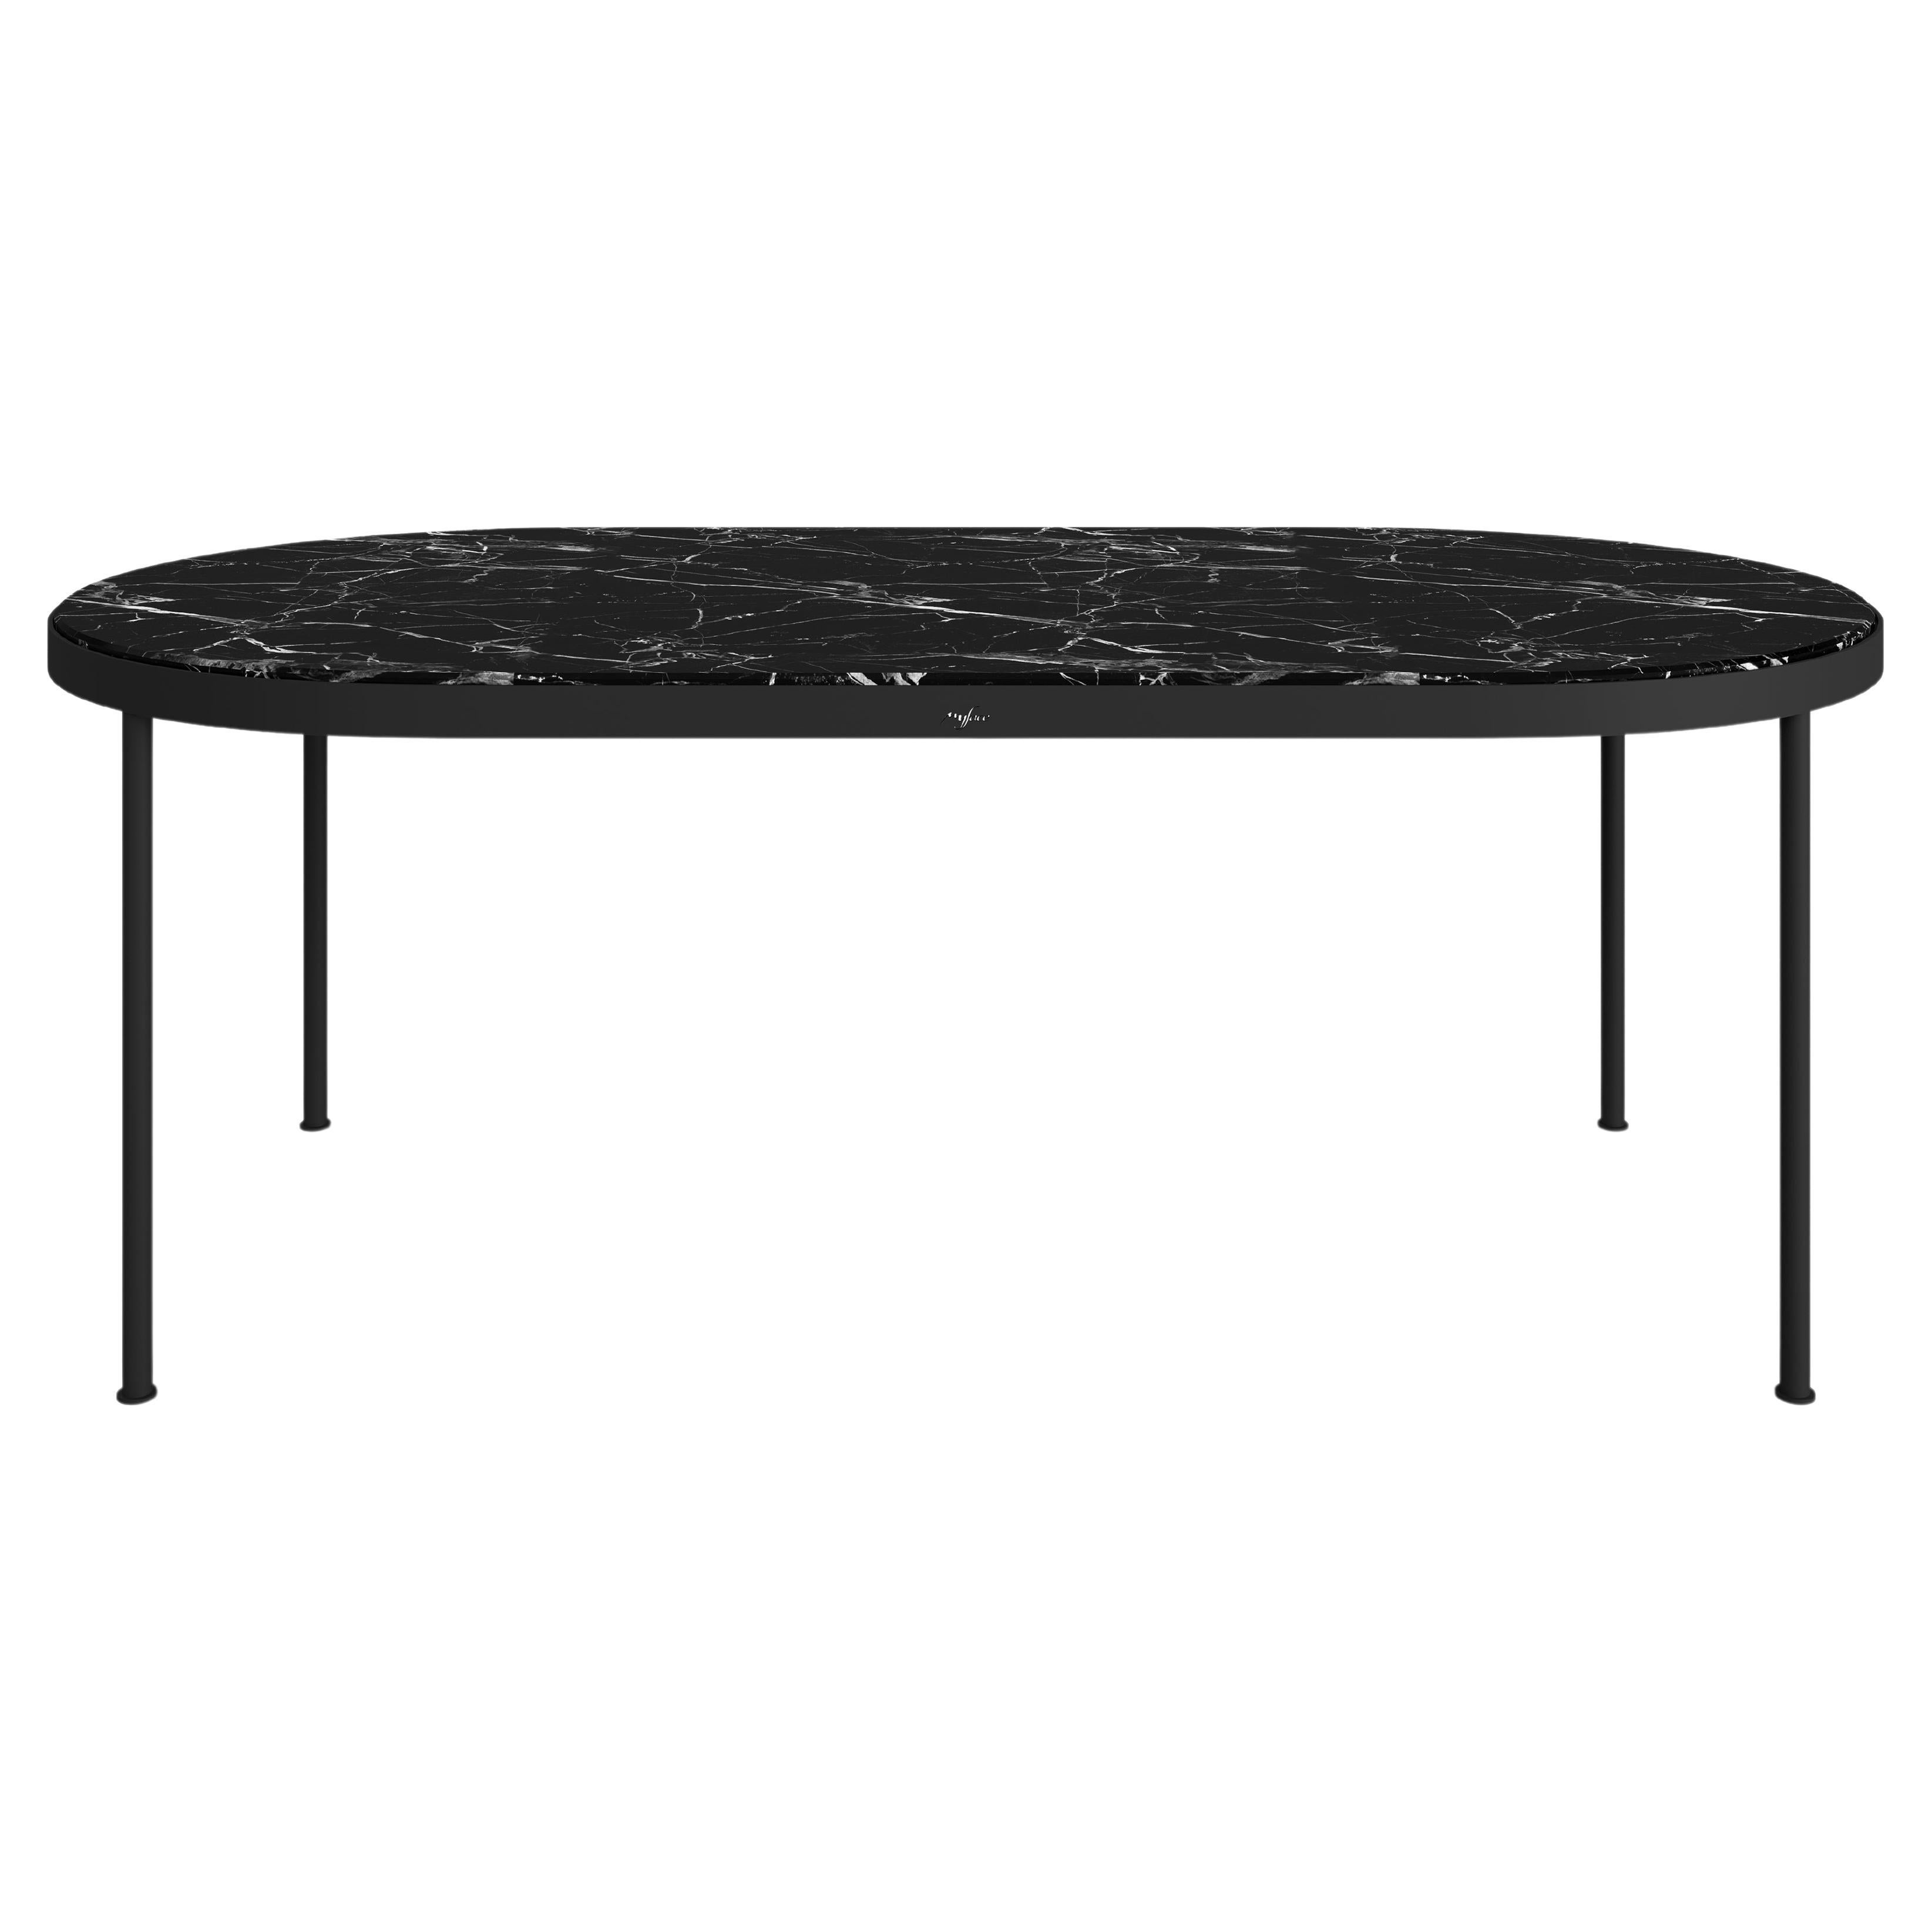 Moderner Esstisch aus Nero Marquina-Marmor für den Außenbereich, groß mit lackierten Beinen